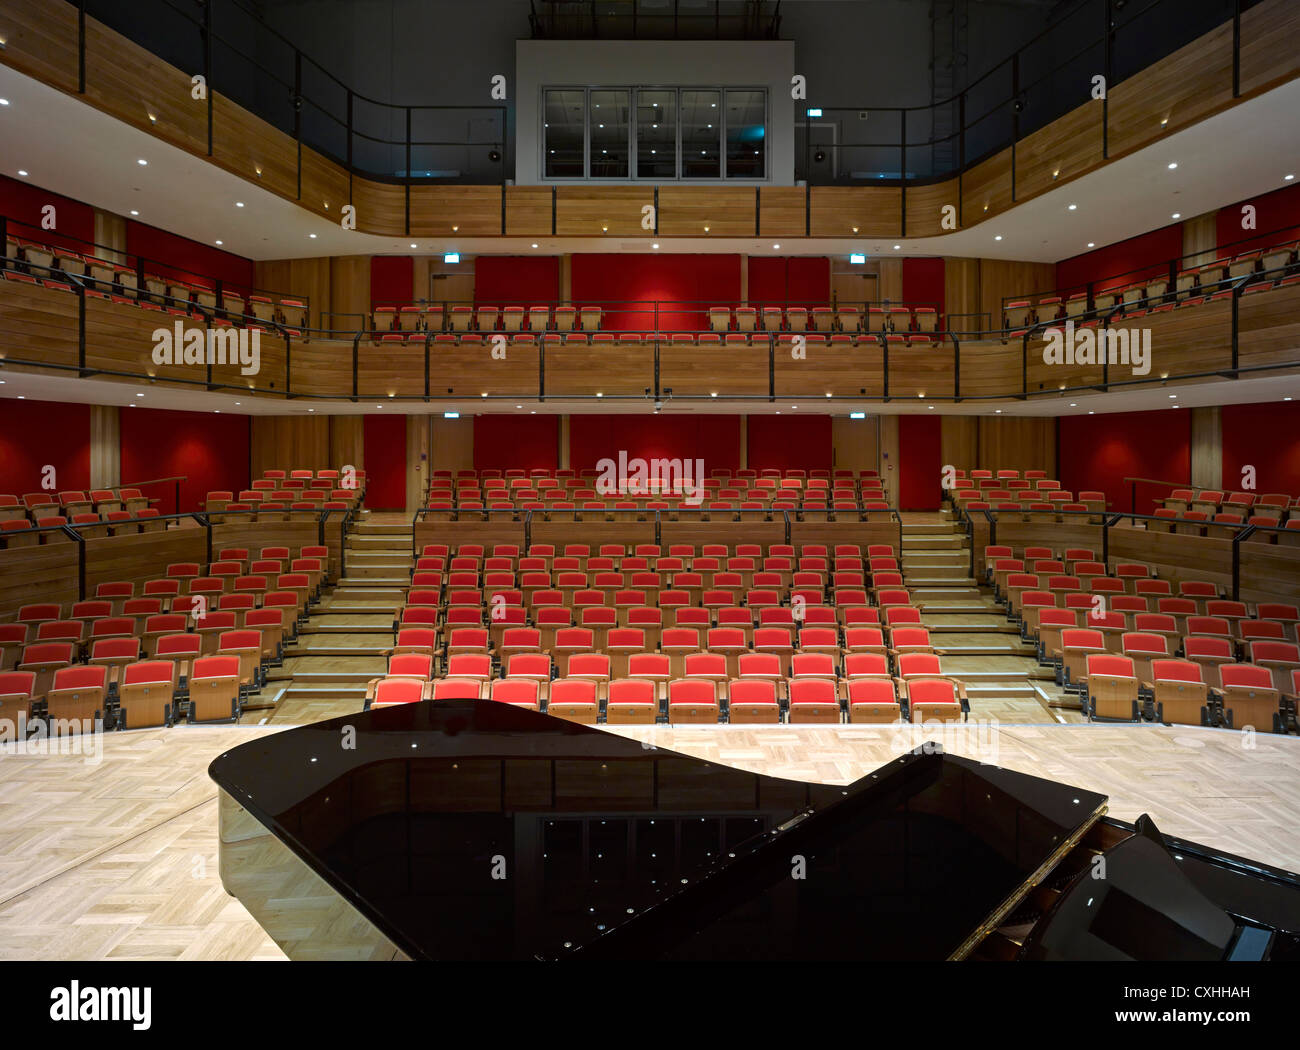 Bramall Musik-Gebäude, Universität von Birmingham, Birmingham, Vereinigtes Königreich. Architekt: Glenn Howells Architects, 2012. Ansicht-fr Stockfoto